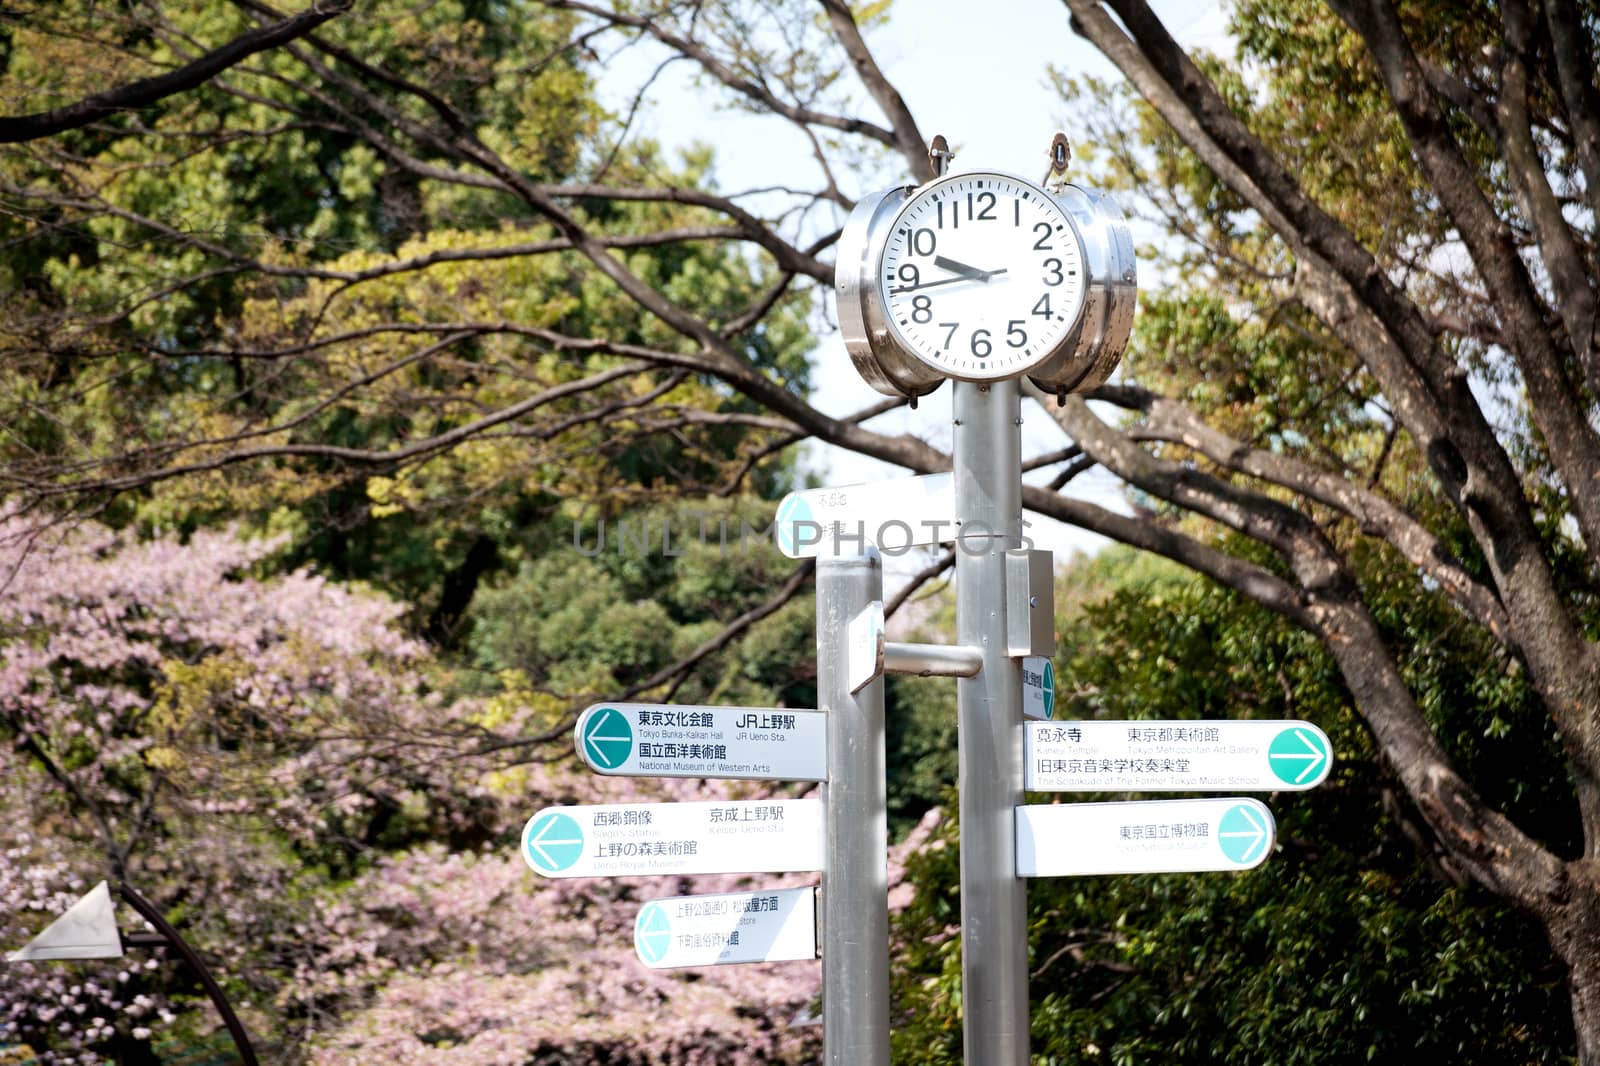 clock in japan park by 2nix